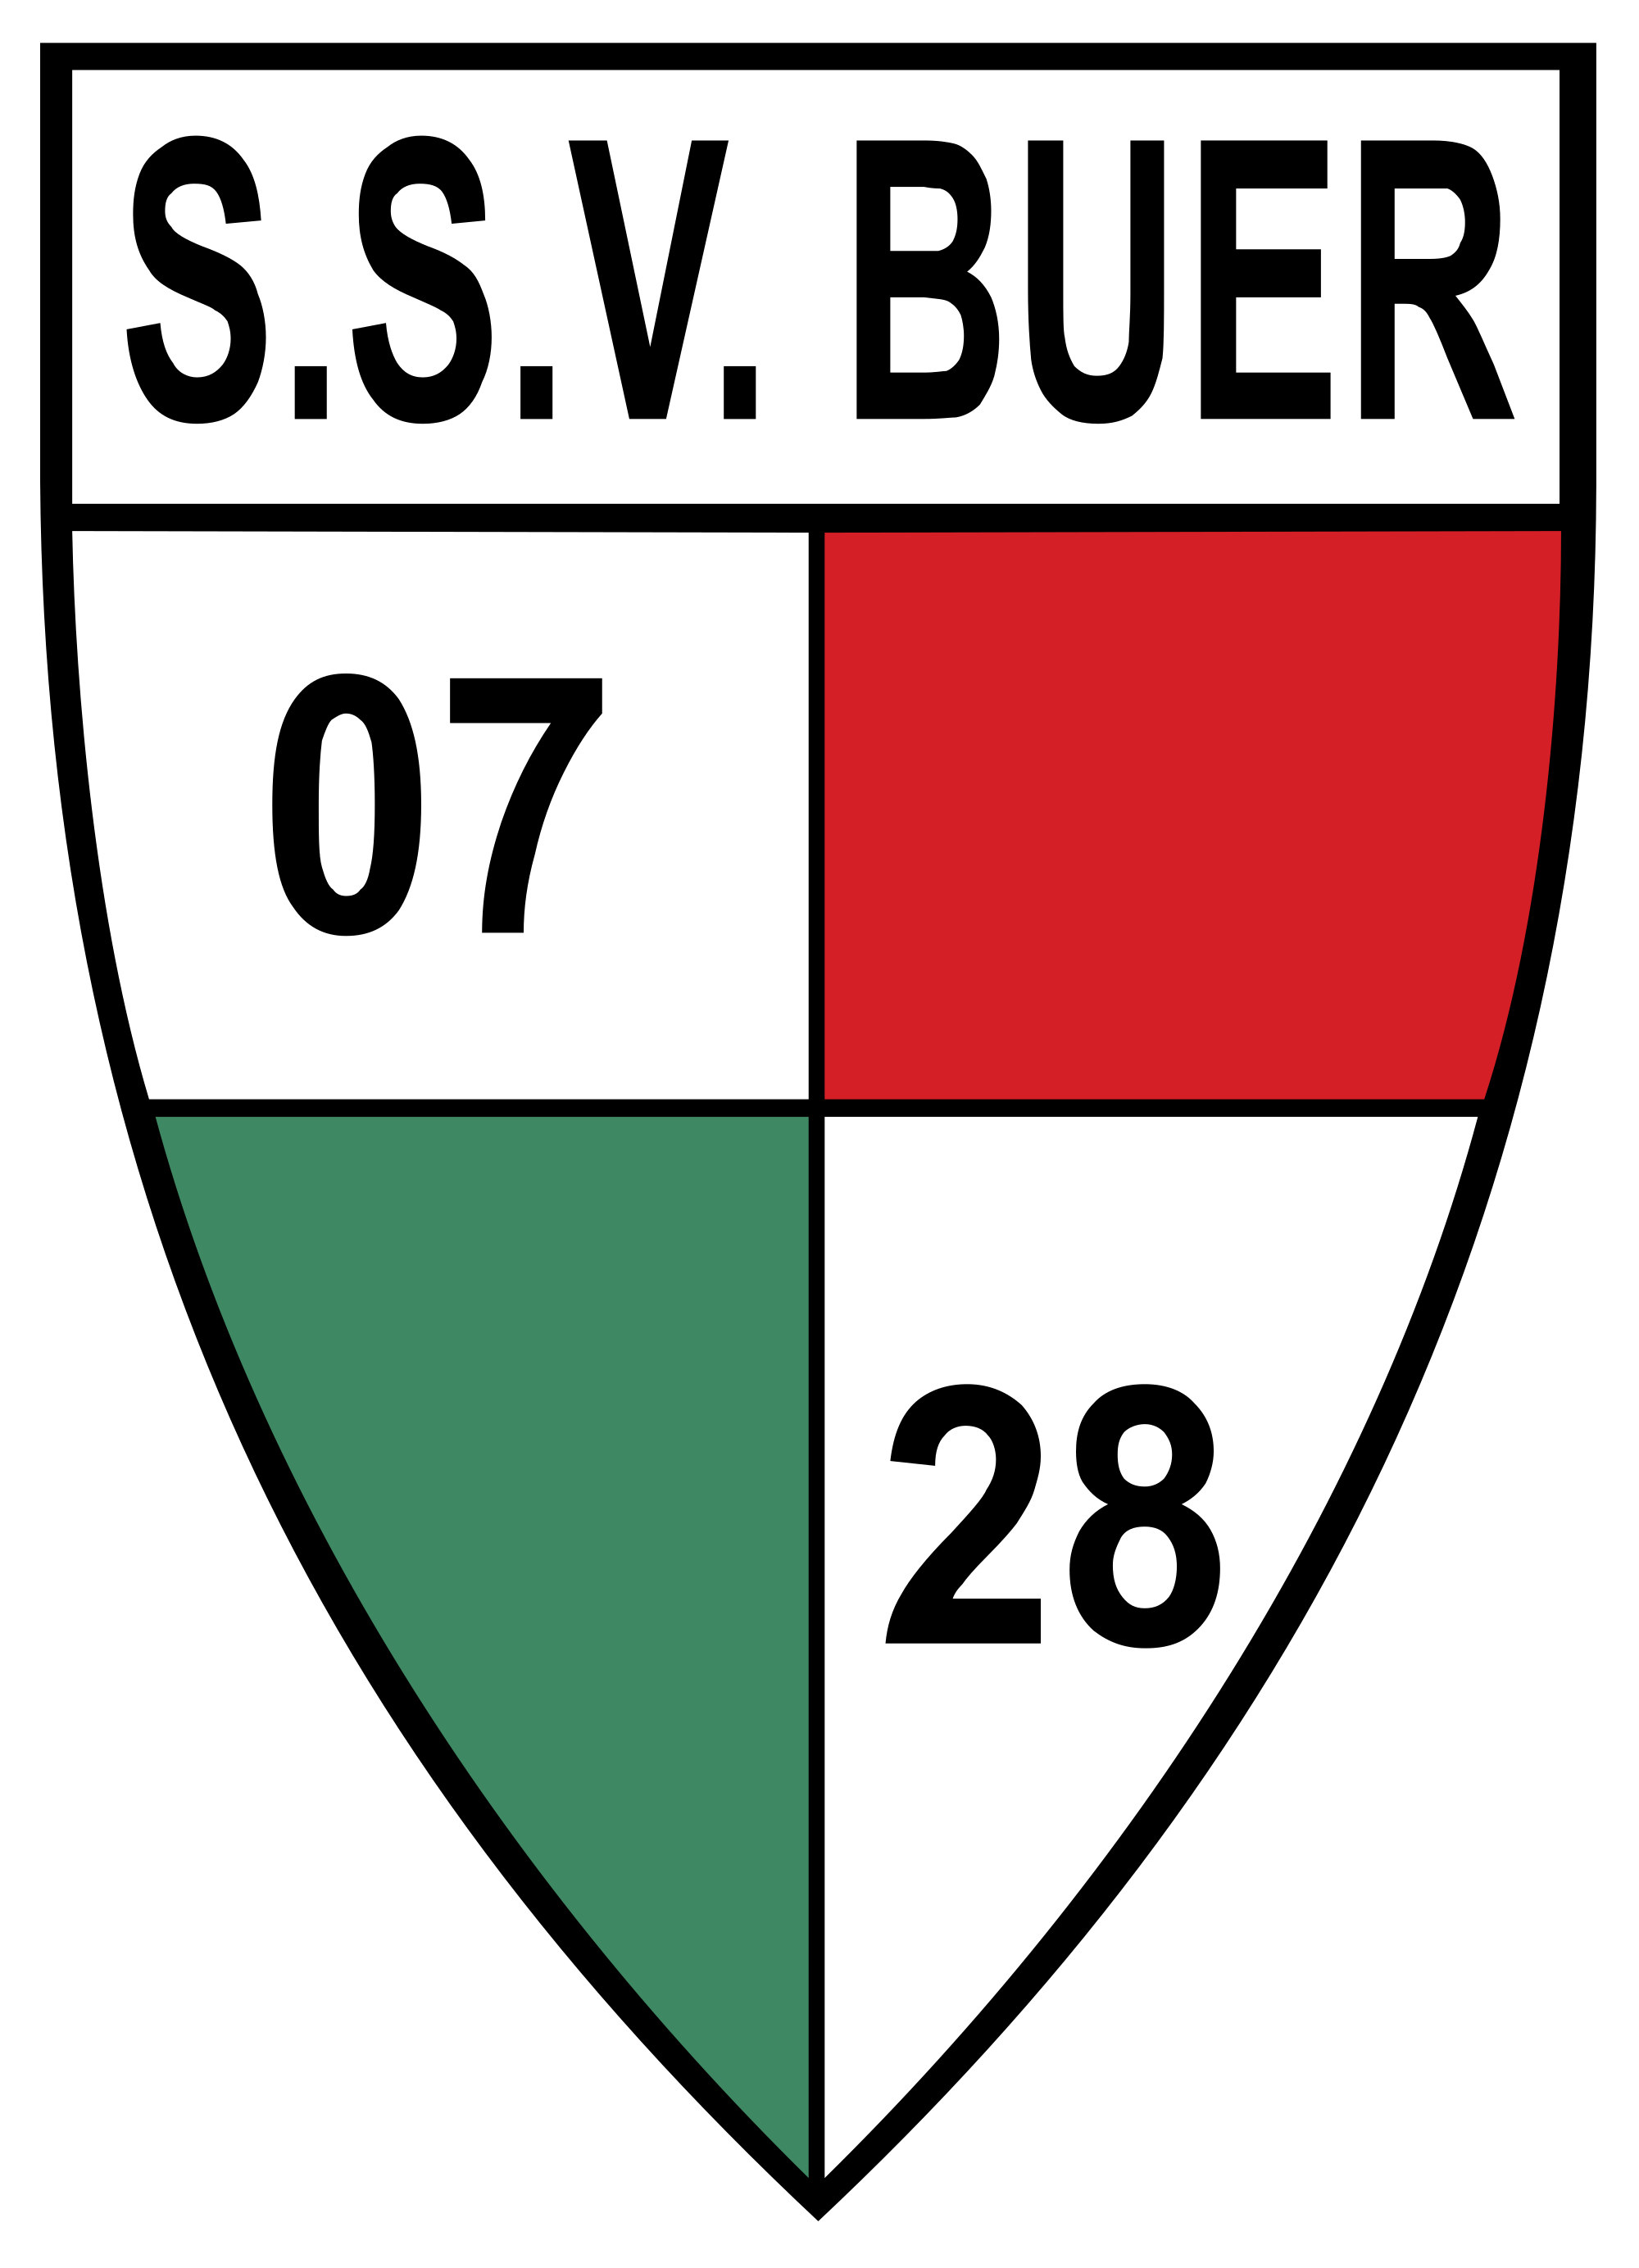 Wappen SSV Buer 07/28  15887